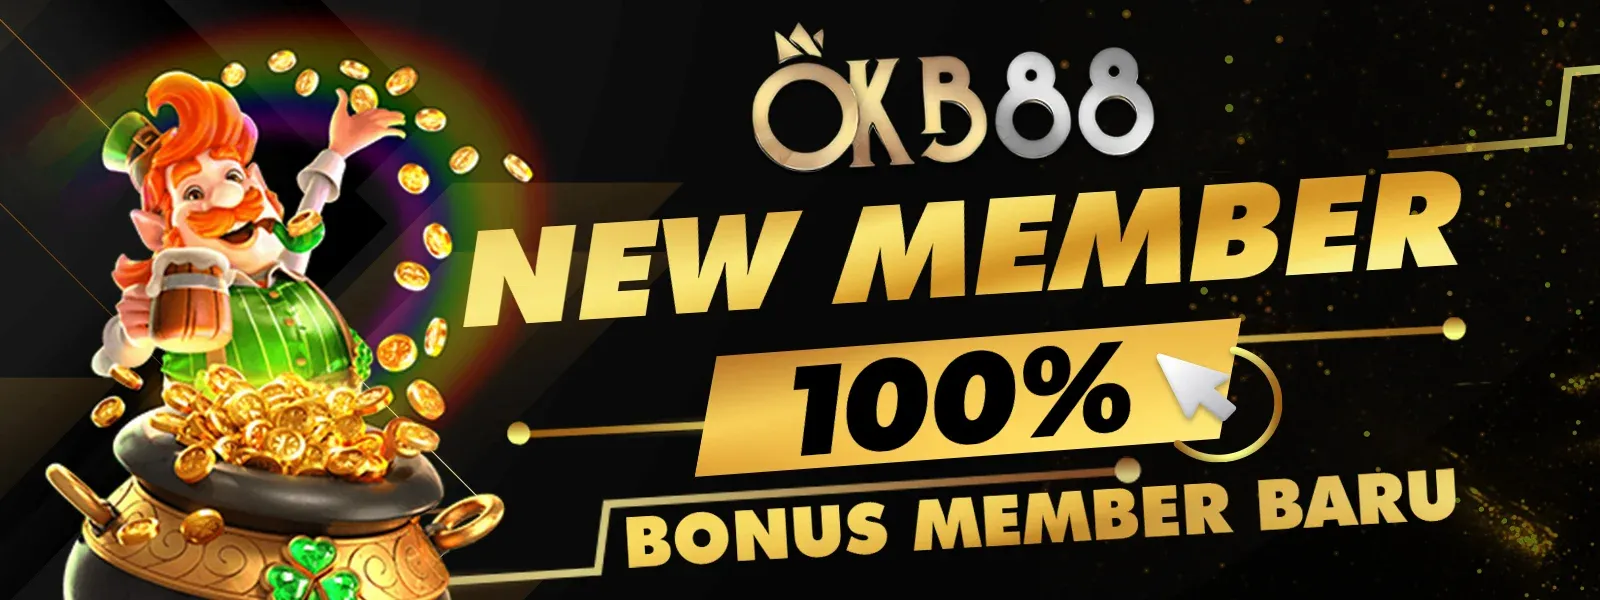 OKB88 NEW MEMBER 100%